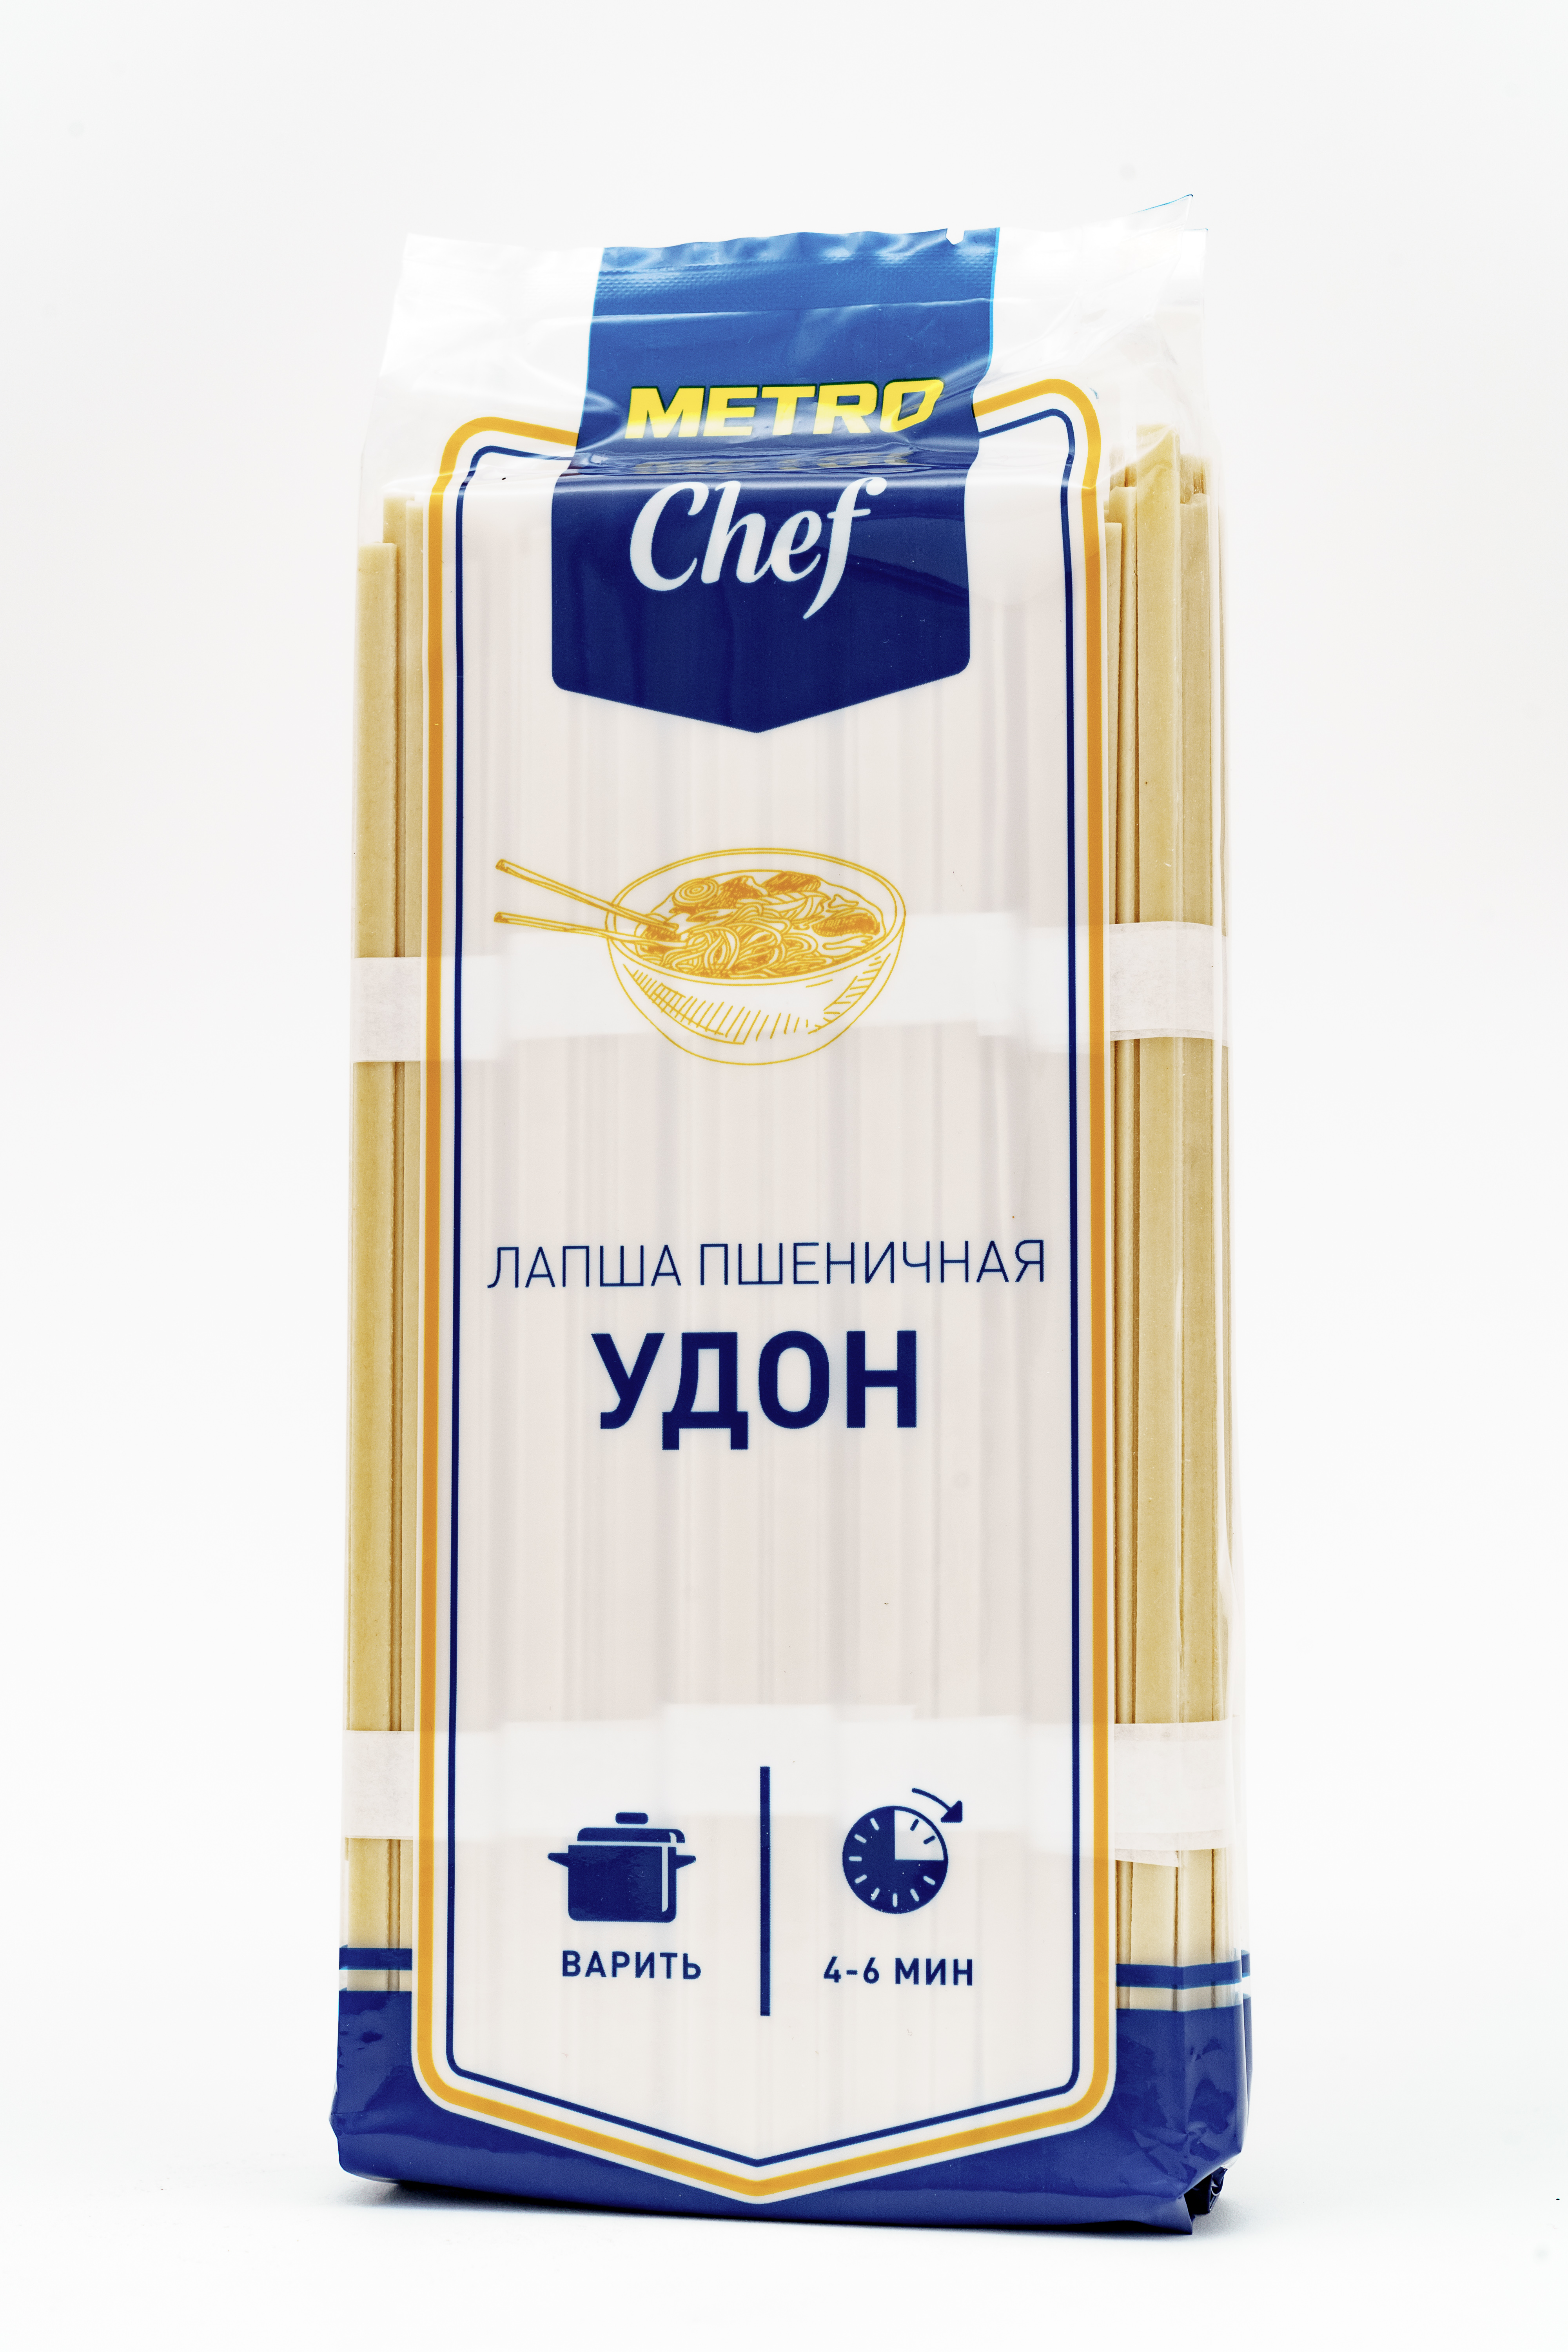 Макаронные изделия METRO Chef Удон лапша пшеничная 500 г